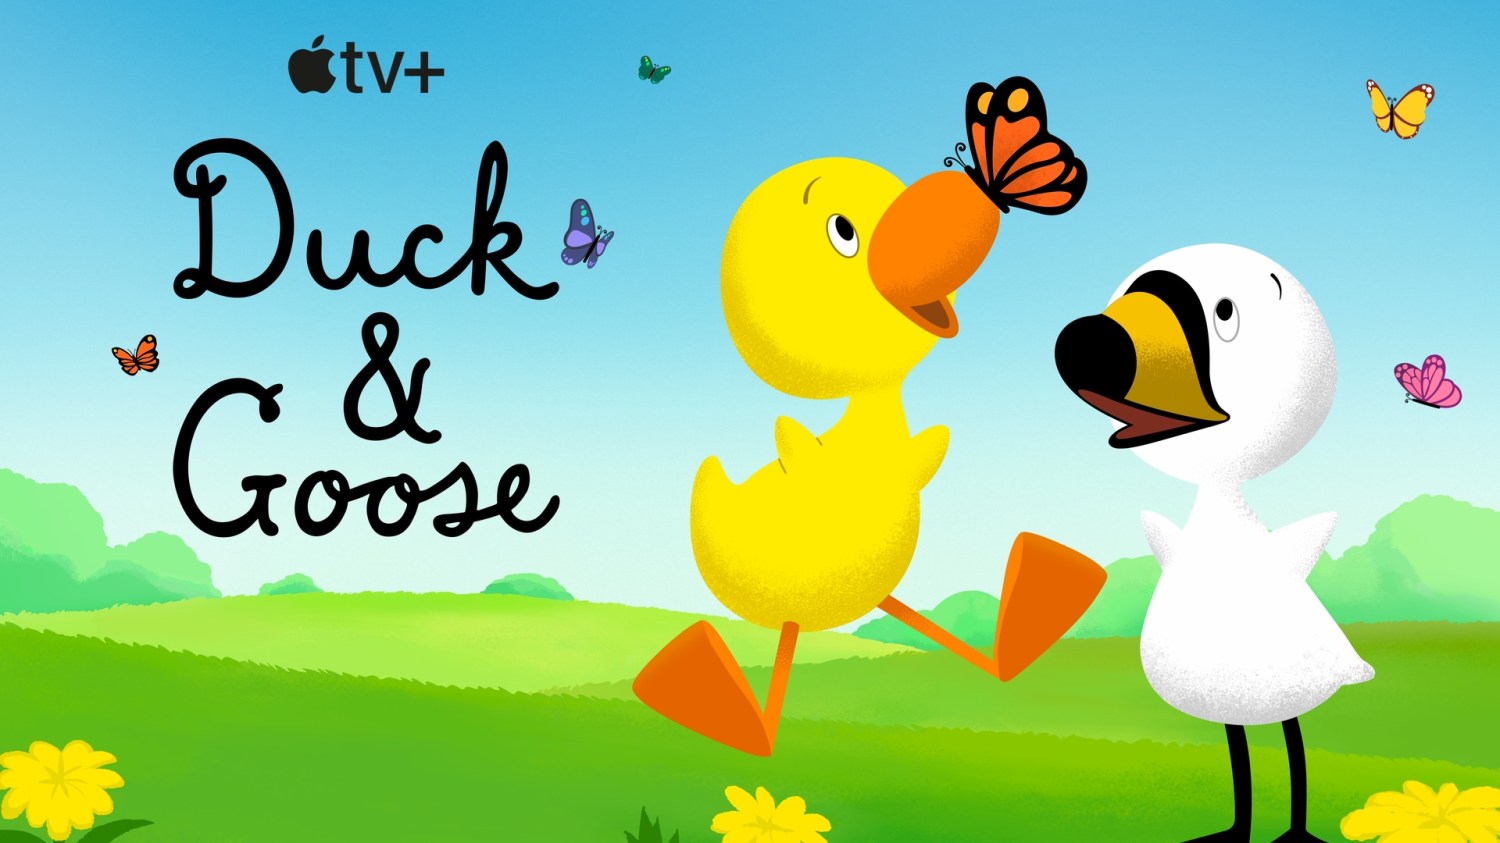 Duck & Goose Apple TV Plus